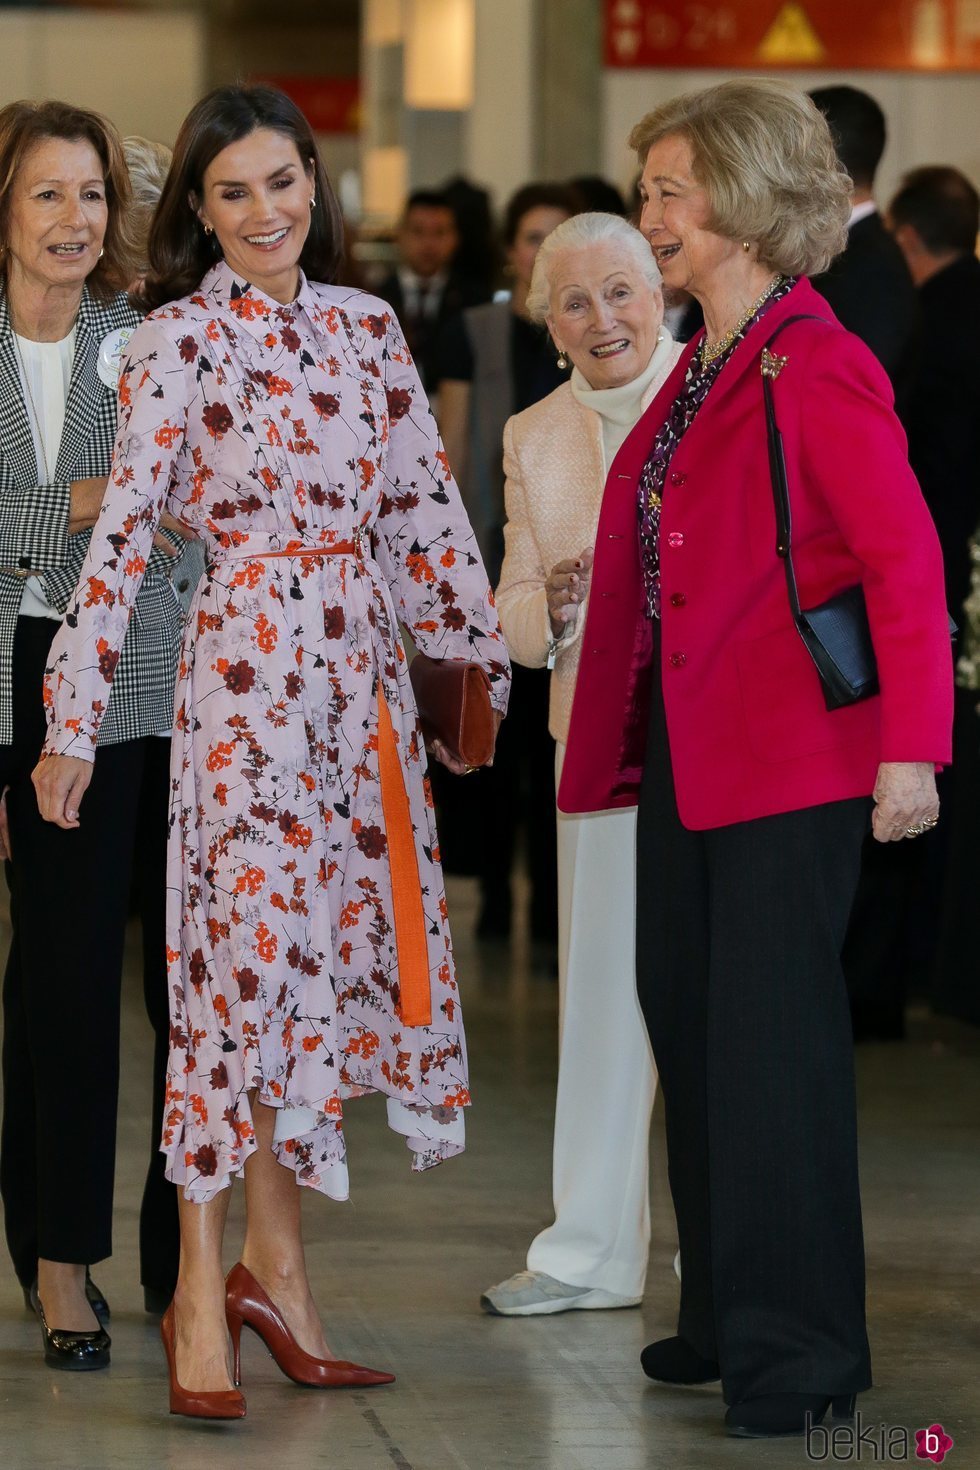 La Reina Letizia y la Reina Sofía, muy cómplices en el Rastrillo Nuevo Futuro 2019